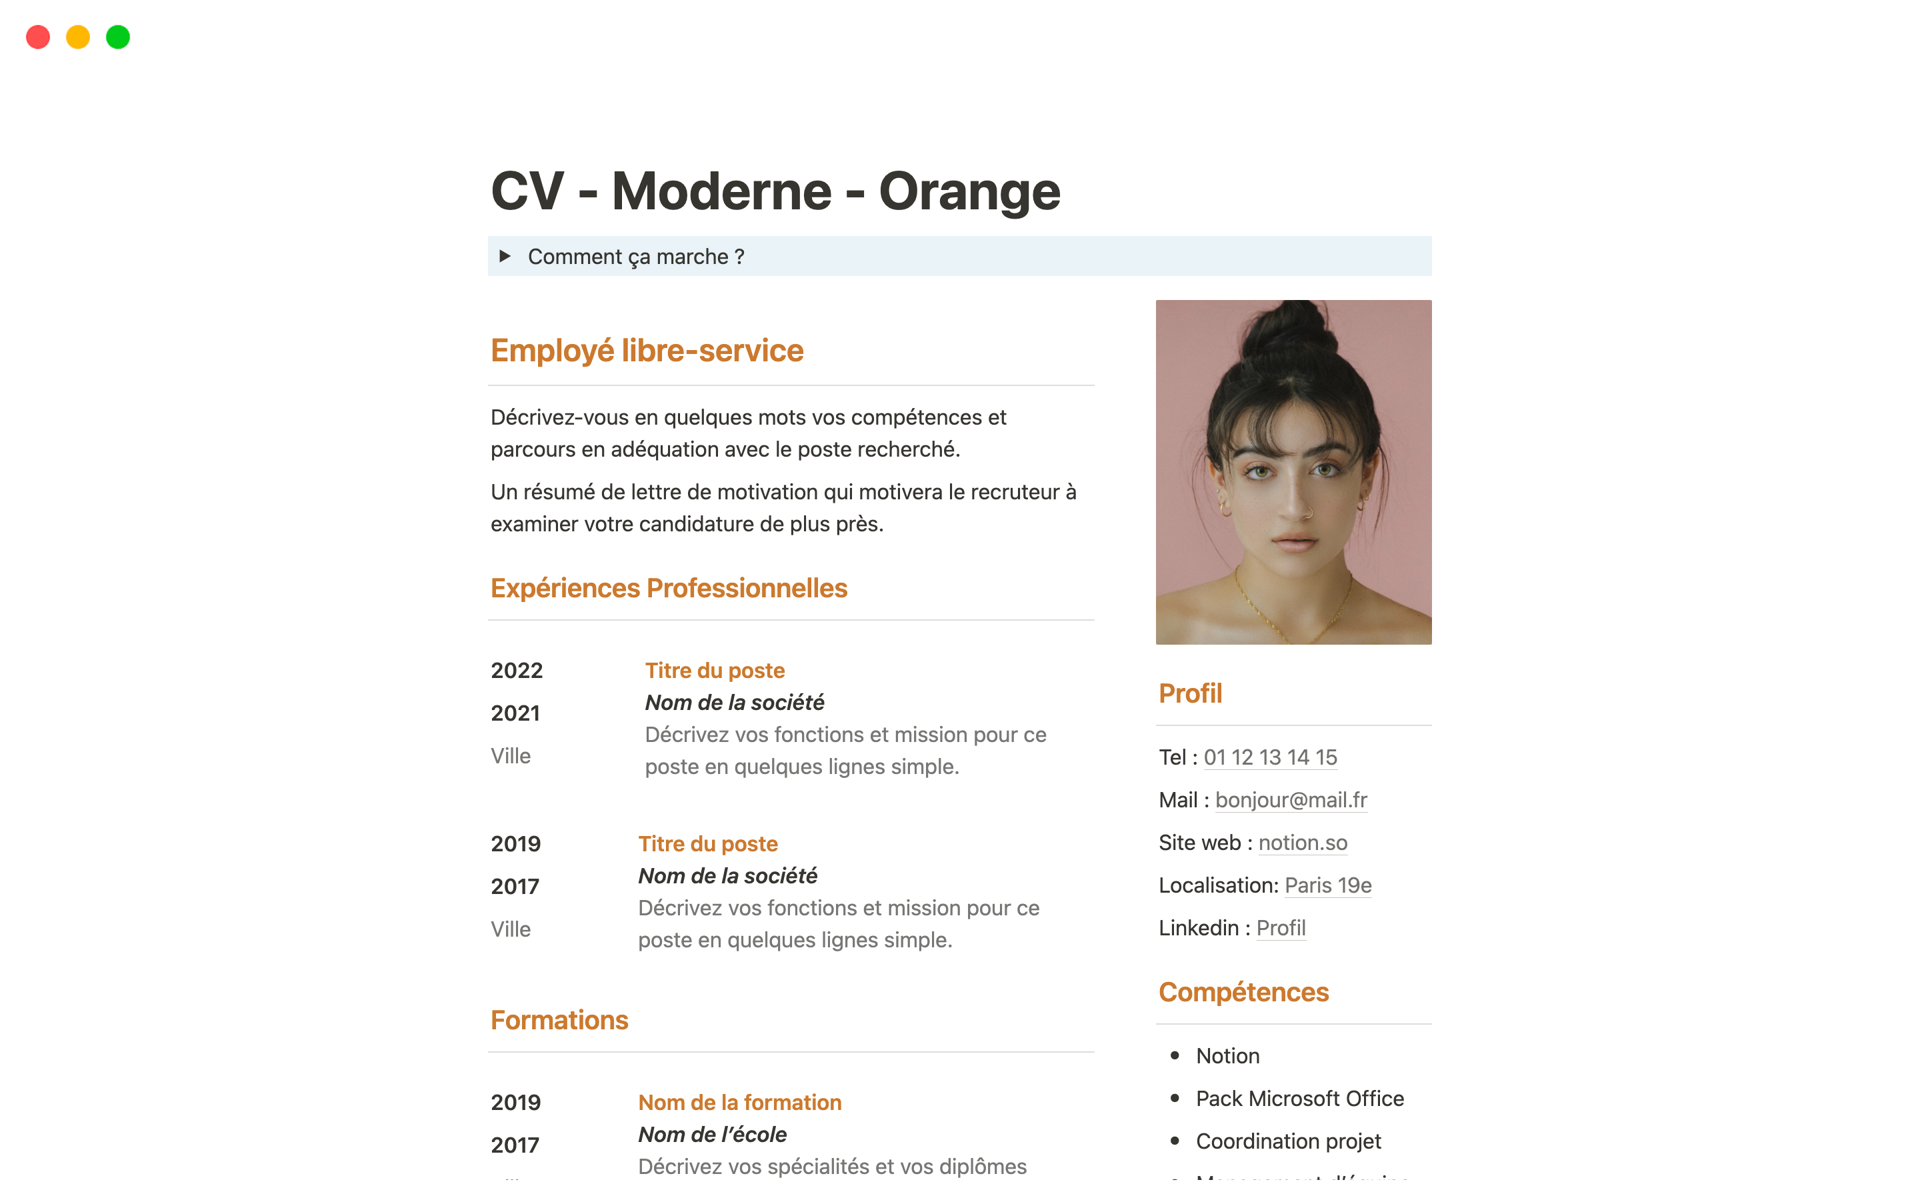 Vista previa de una plantilla para CV - Moderne - Orange